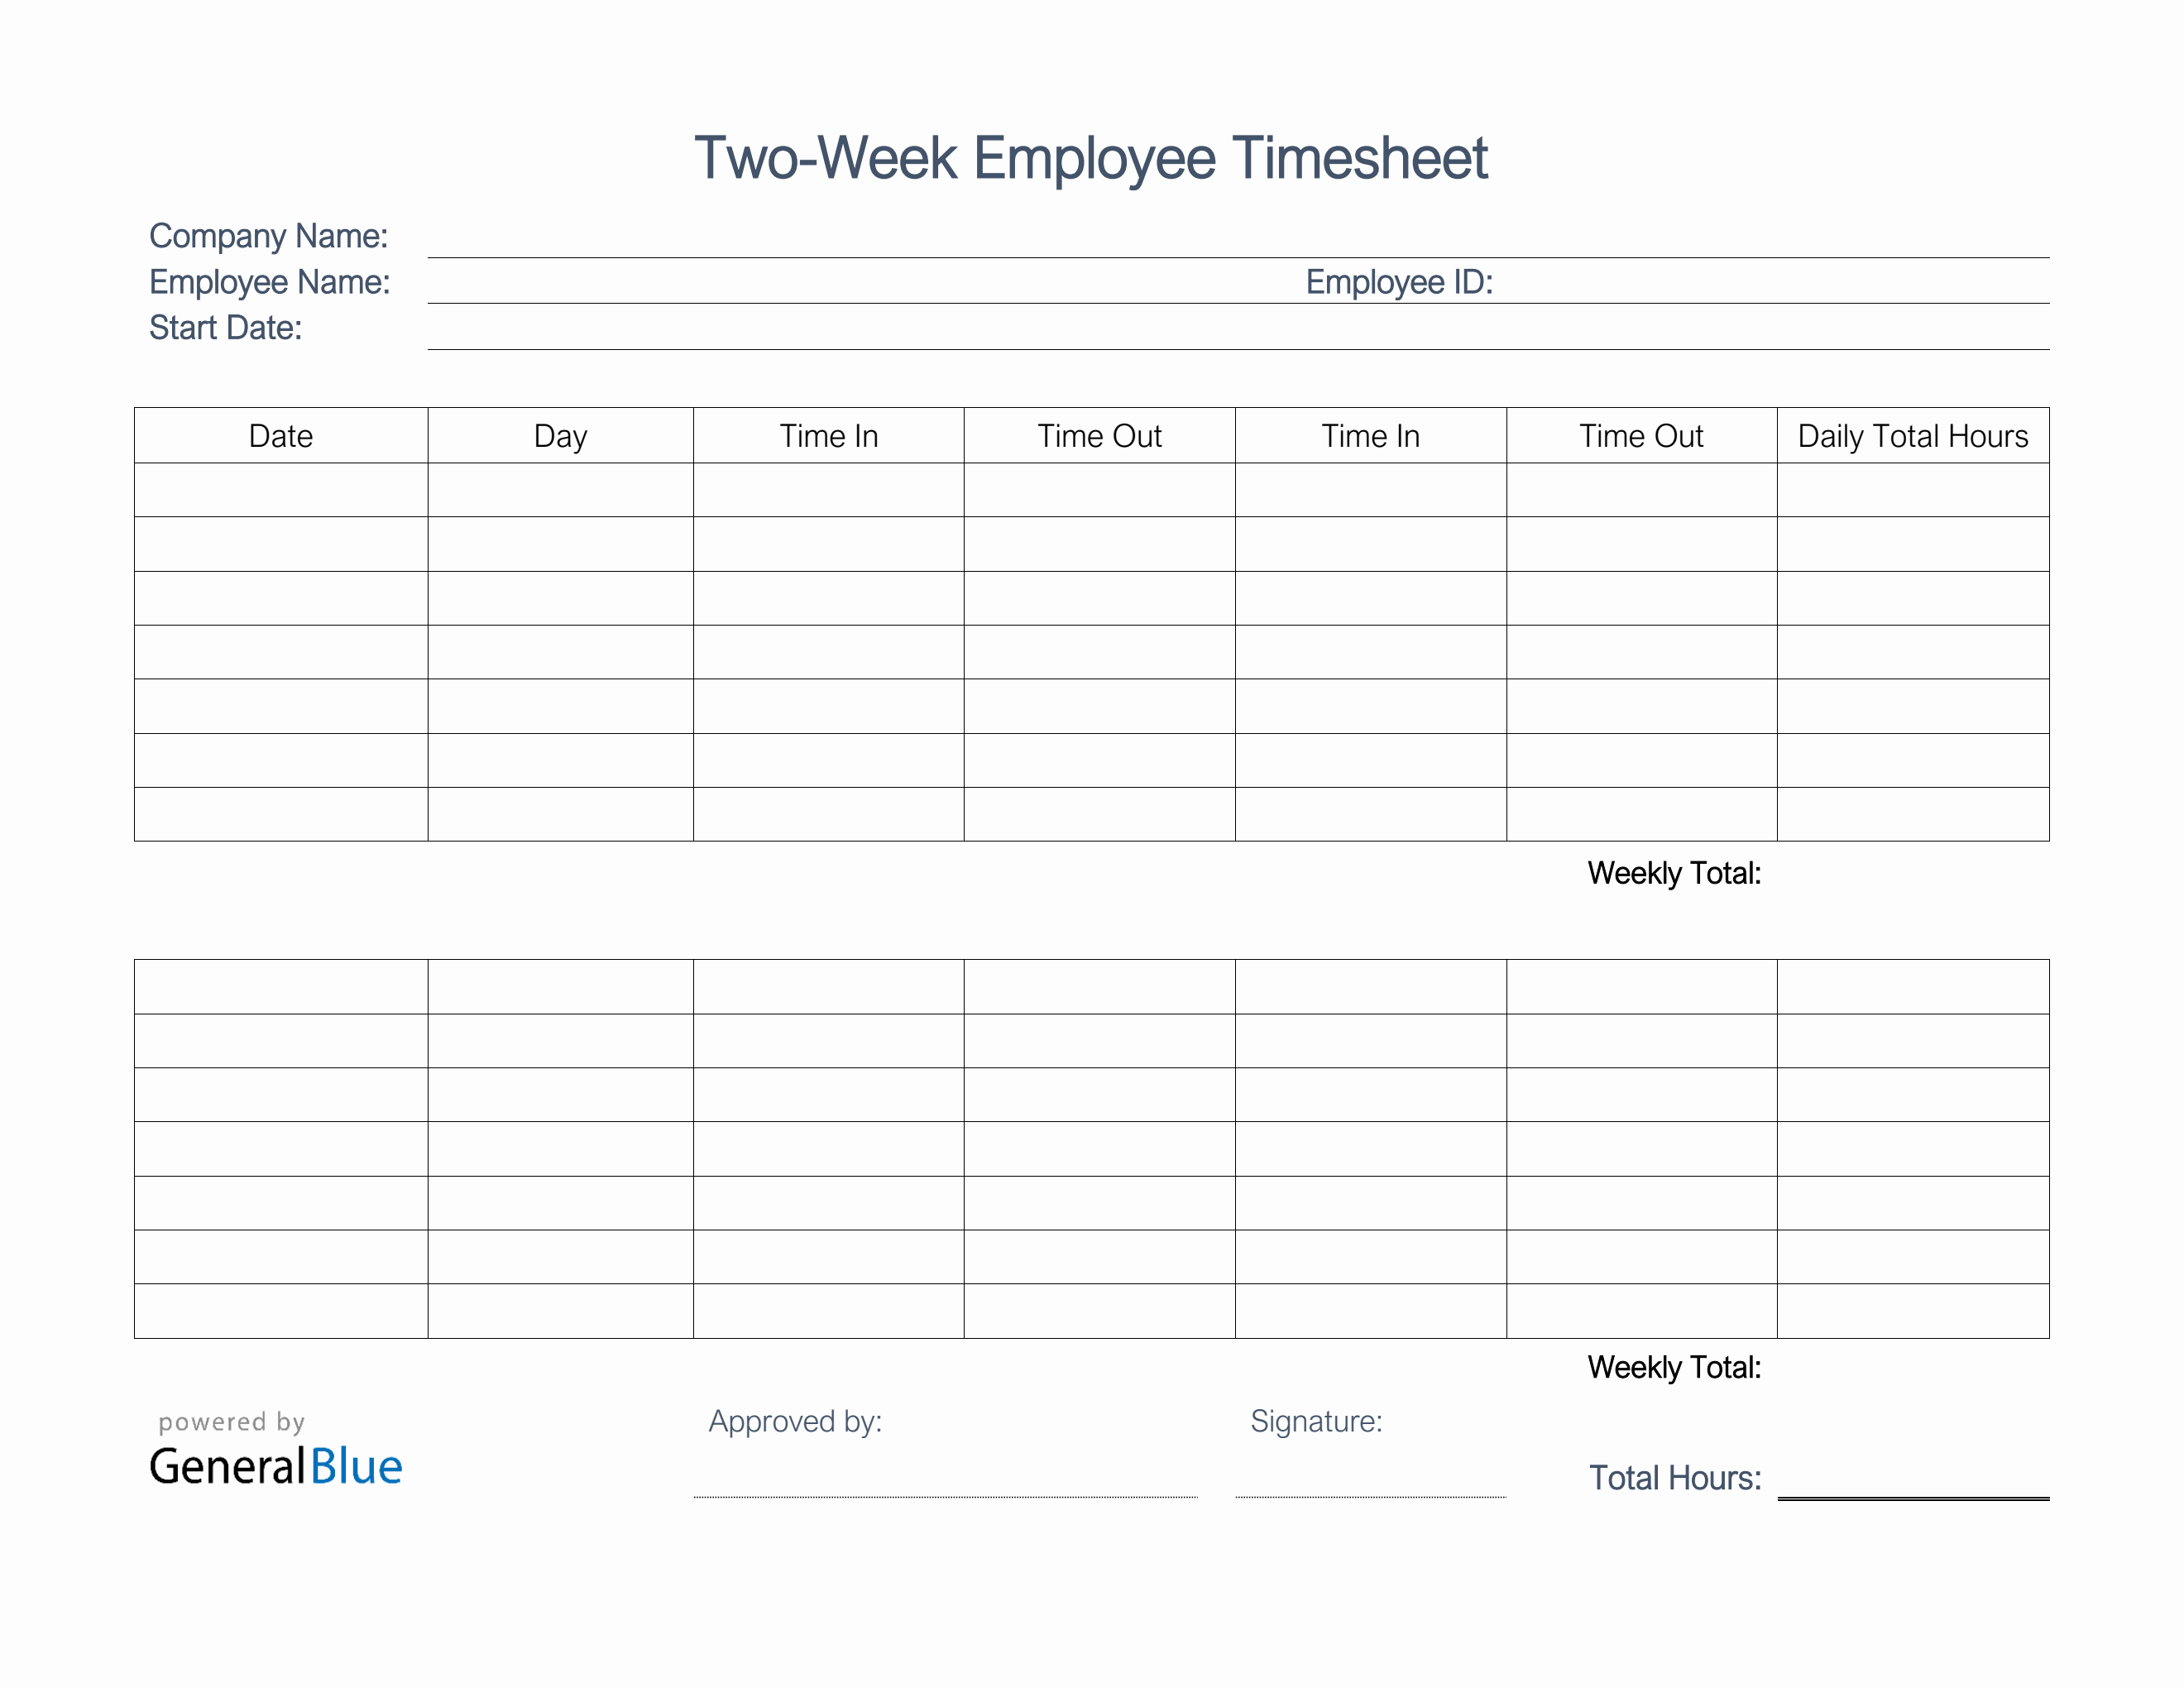 Printable Two-Week Employee Timesheet in Word